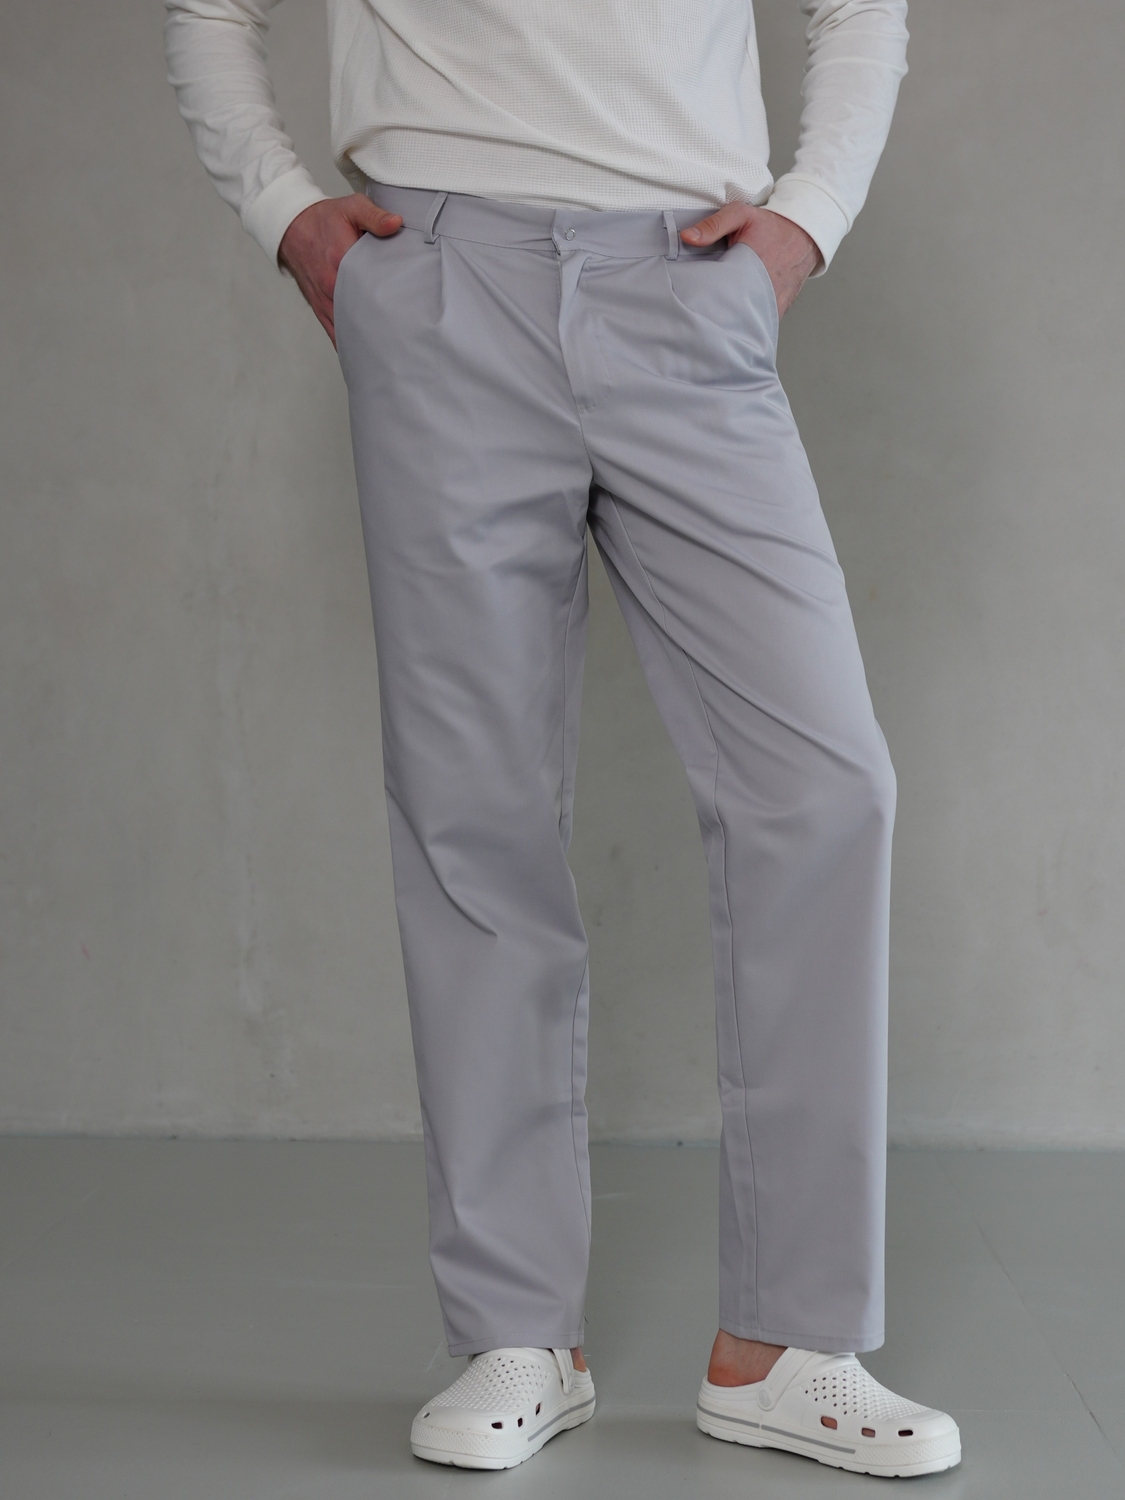 Чоловічі медичні брюки сірі МШ-05